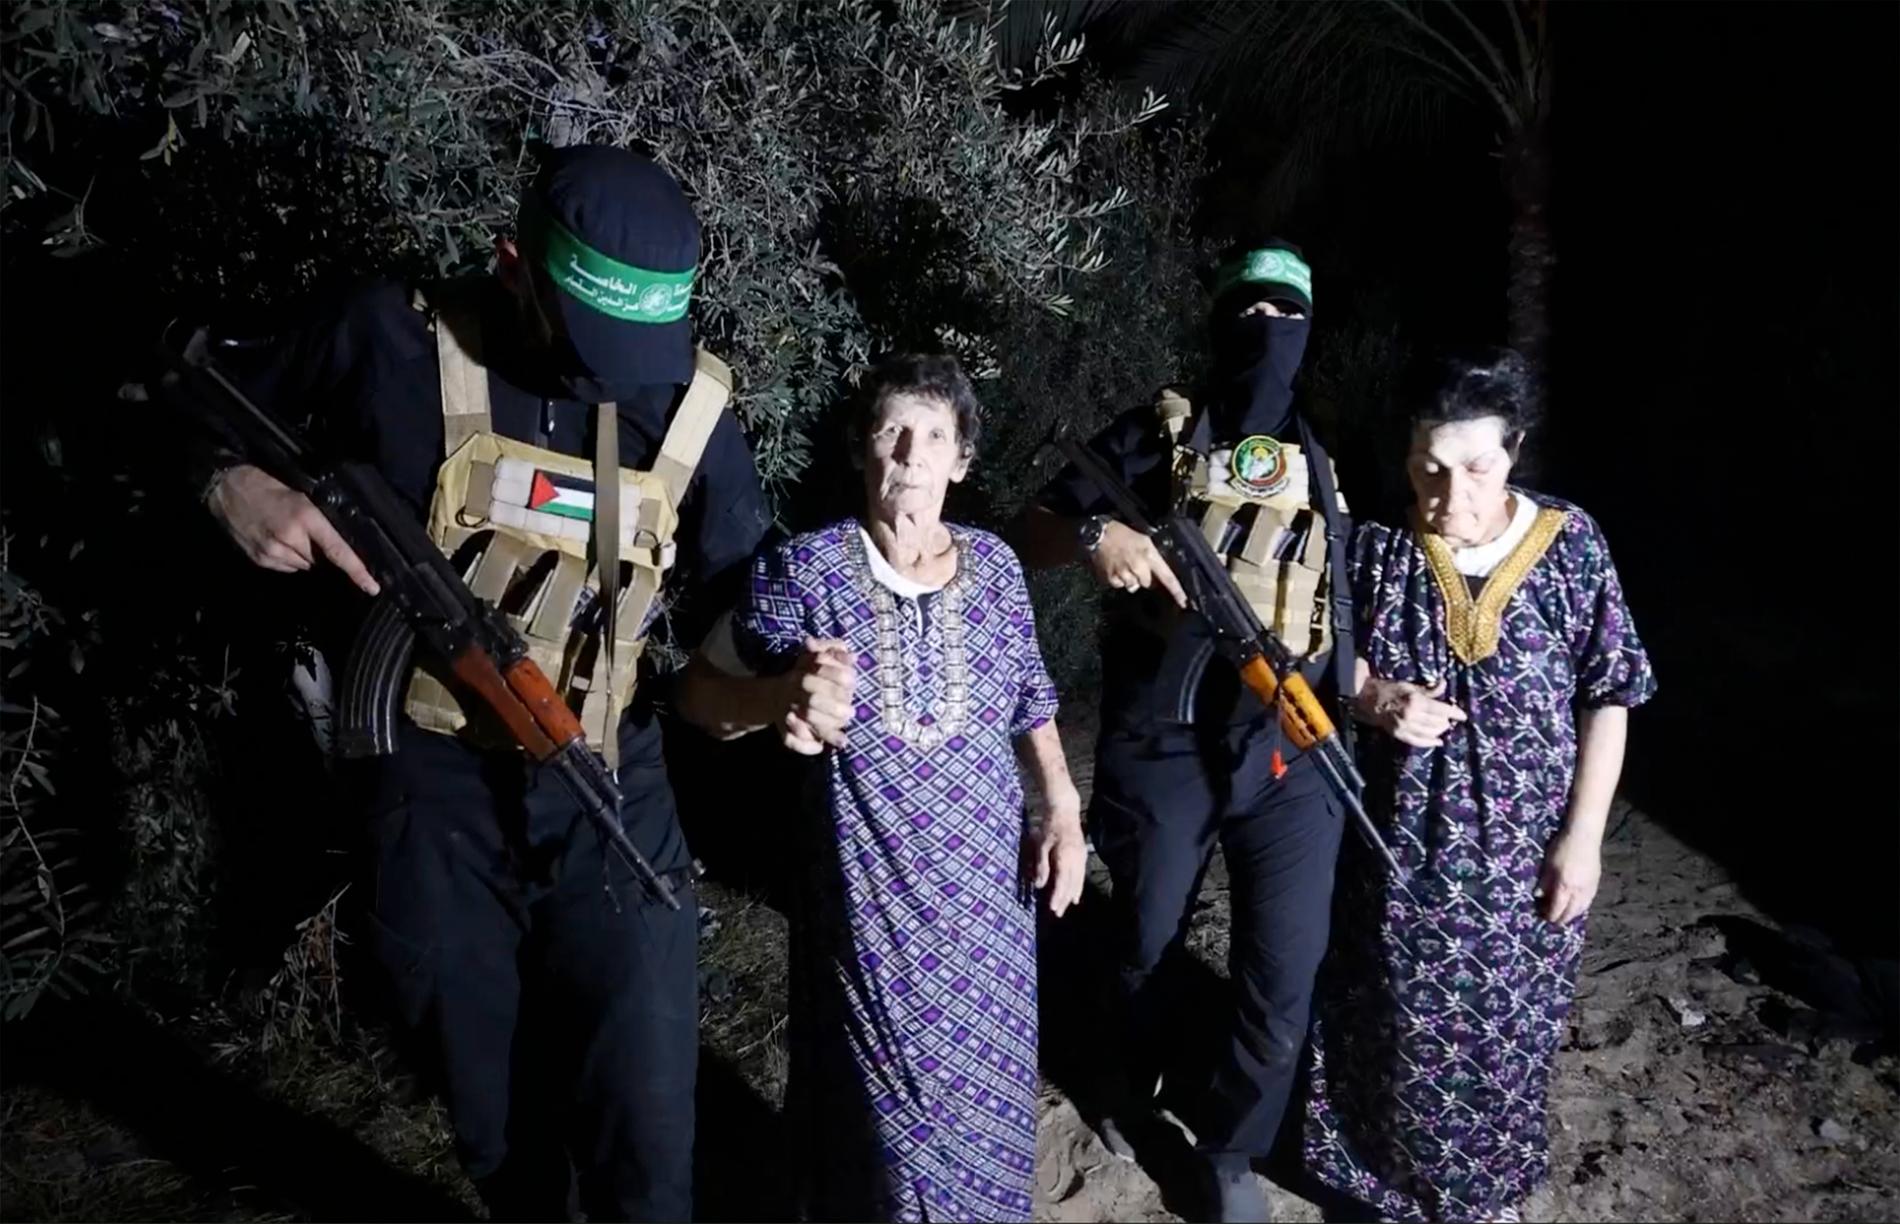 Vid frigivandet syntes Yocheved Lifschitz ta en av Hamasmännens händer och säga ”Shalom” innan hon överlämnades till Röda korsets personal. Hon beskrev vid pressträffen att hon gjorde det ”eftersom de behandlade oss väl”. 